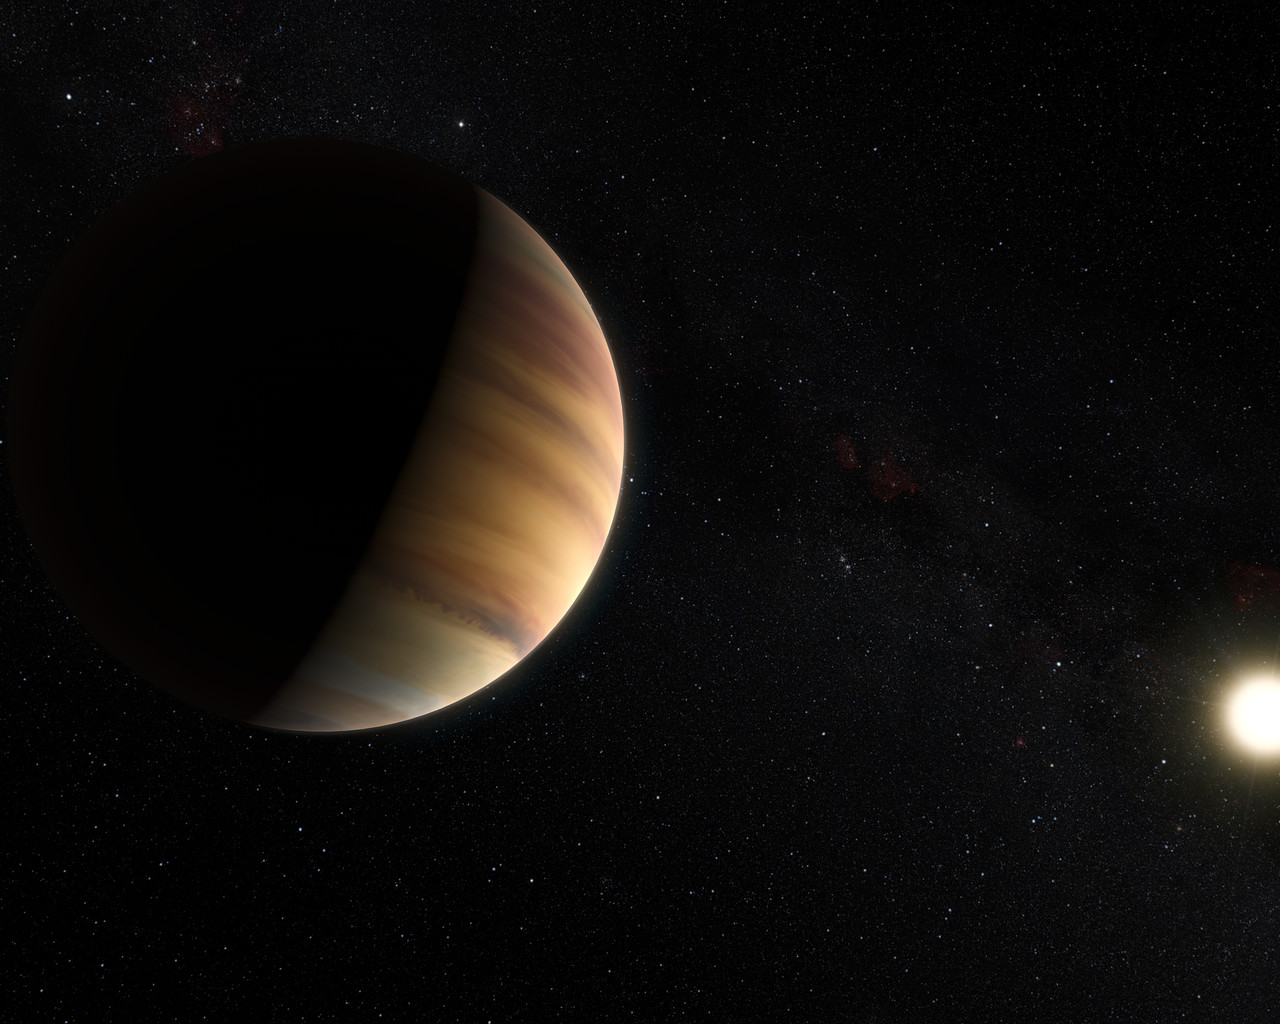 51 Pegasi b, première exoplanète détectée en 1995, vue par un artiste.